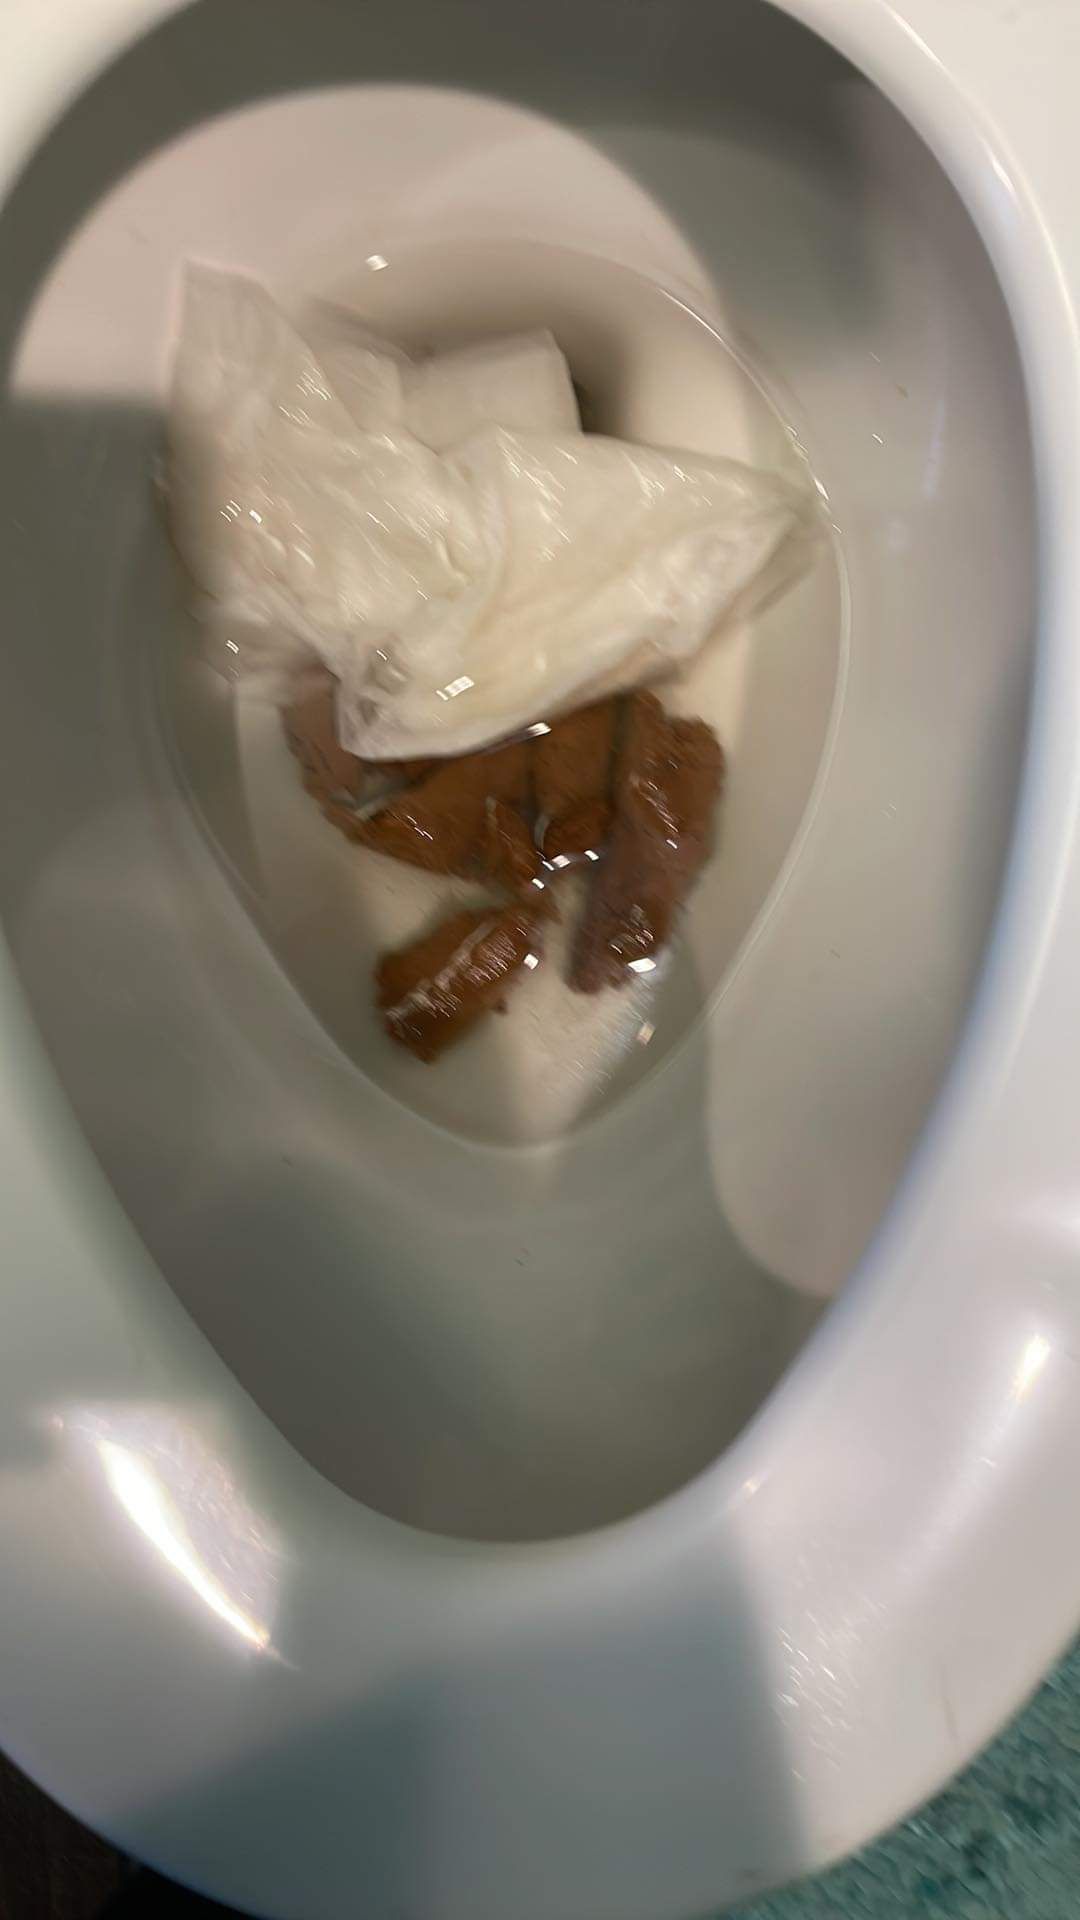 Toilet poop